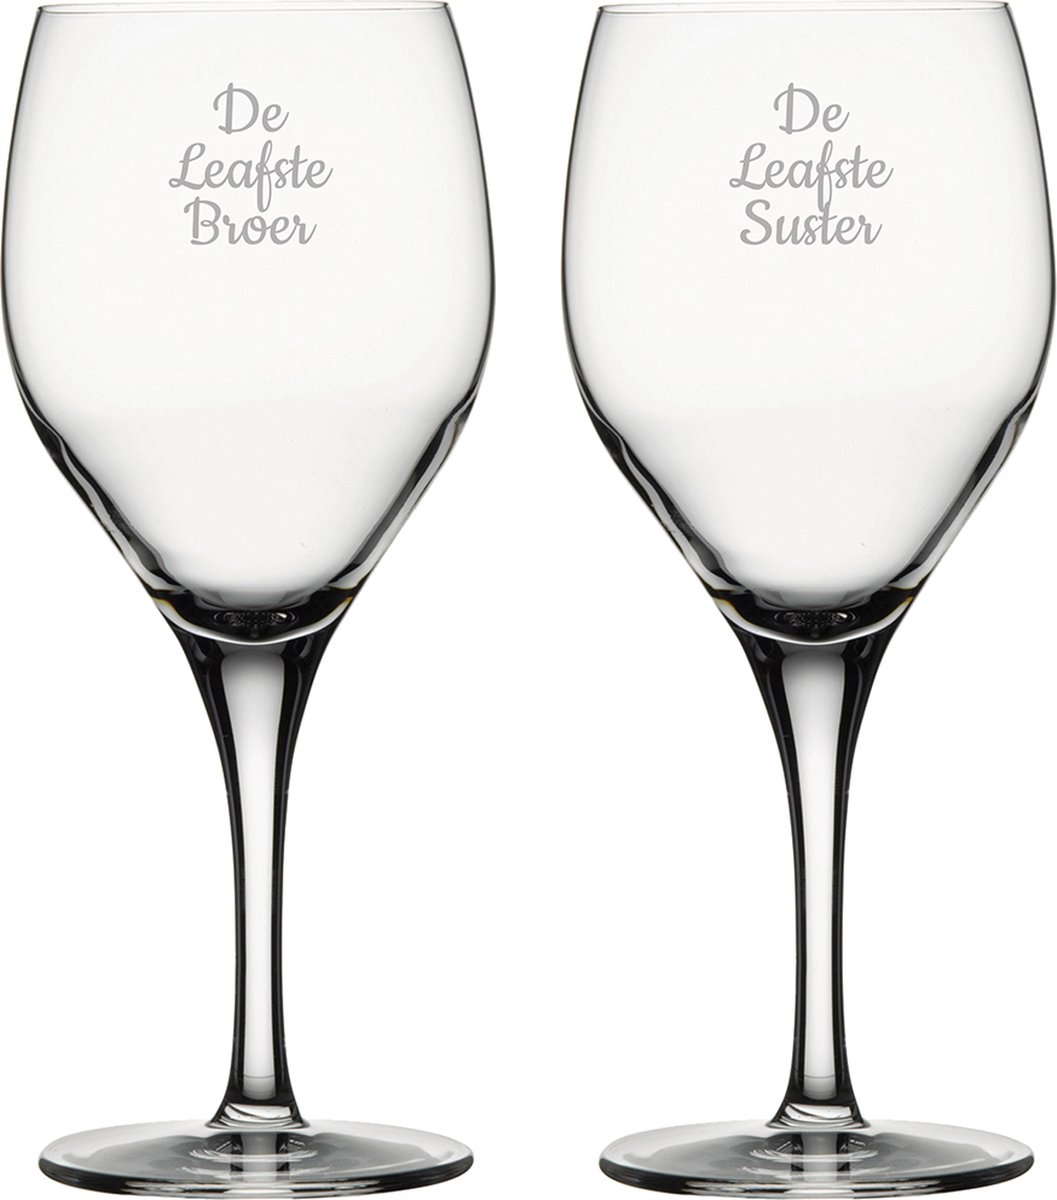 Gegraveerde Rode wijnglas 42,5cl De Leukste Broer-De Leukste Suster